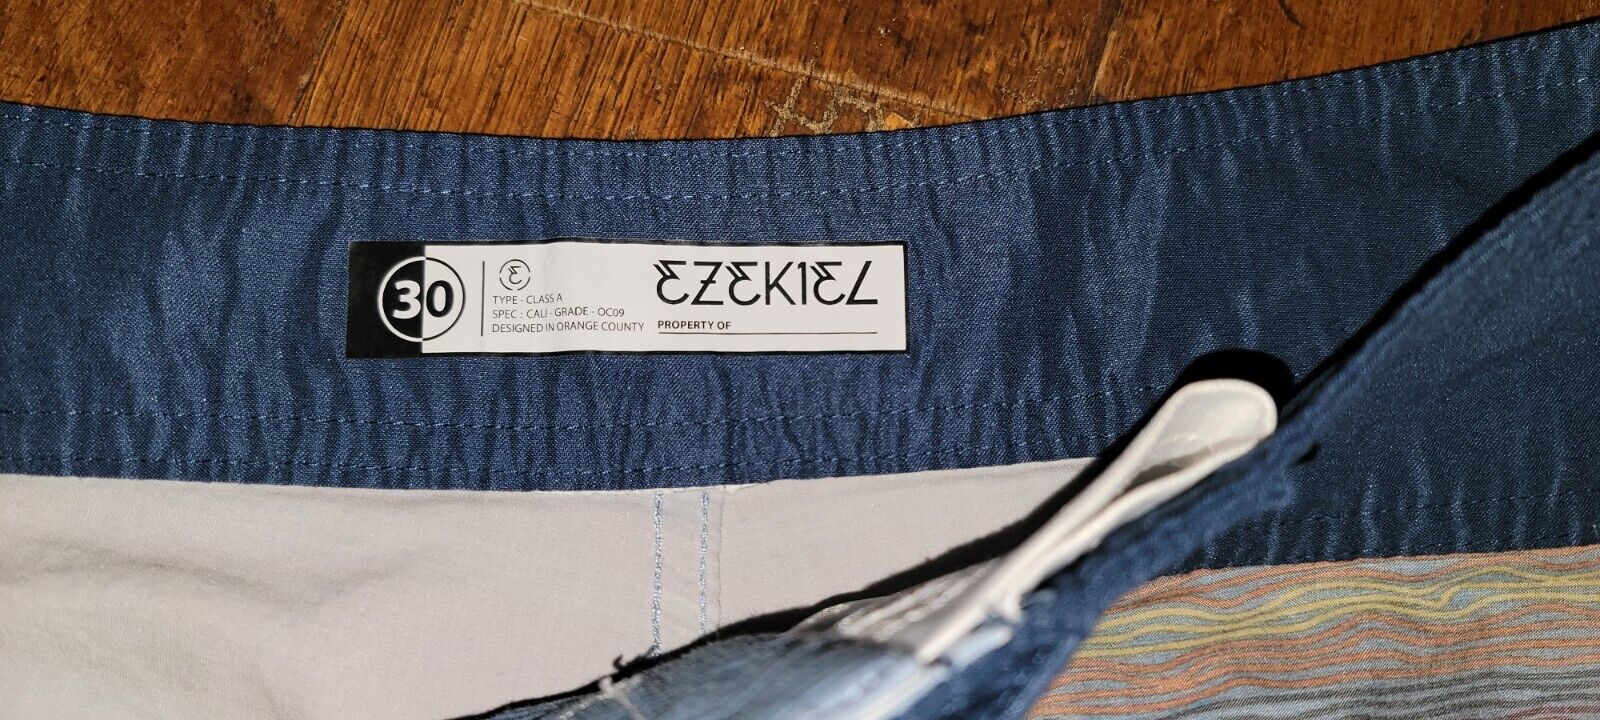 Ezekiel Board Shorts Size 30 Sunset - image 4